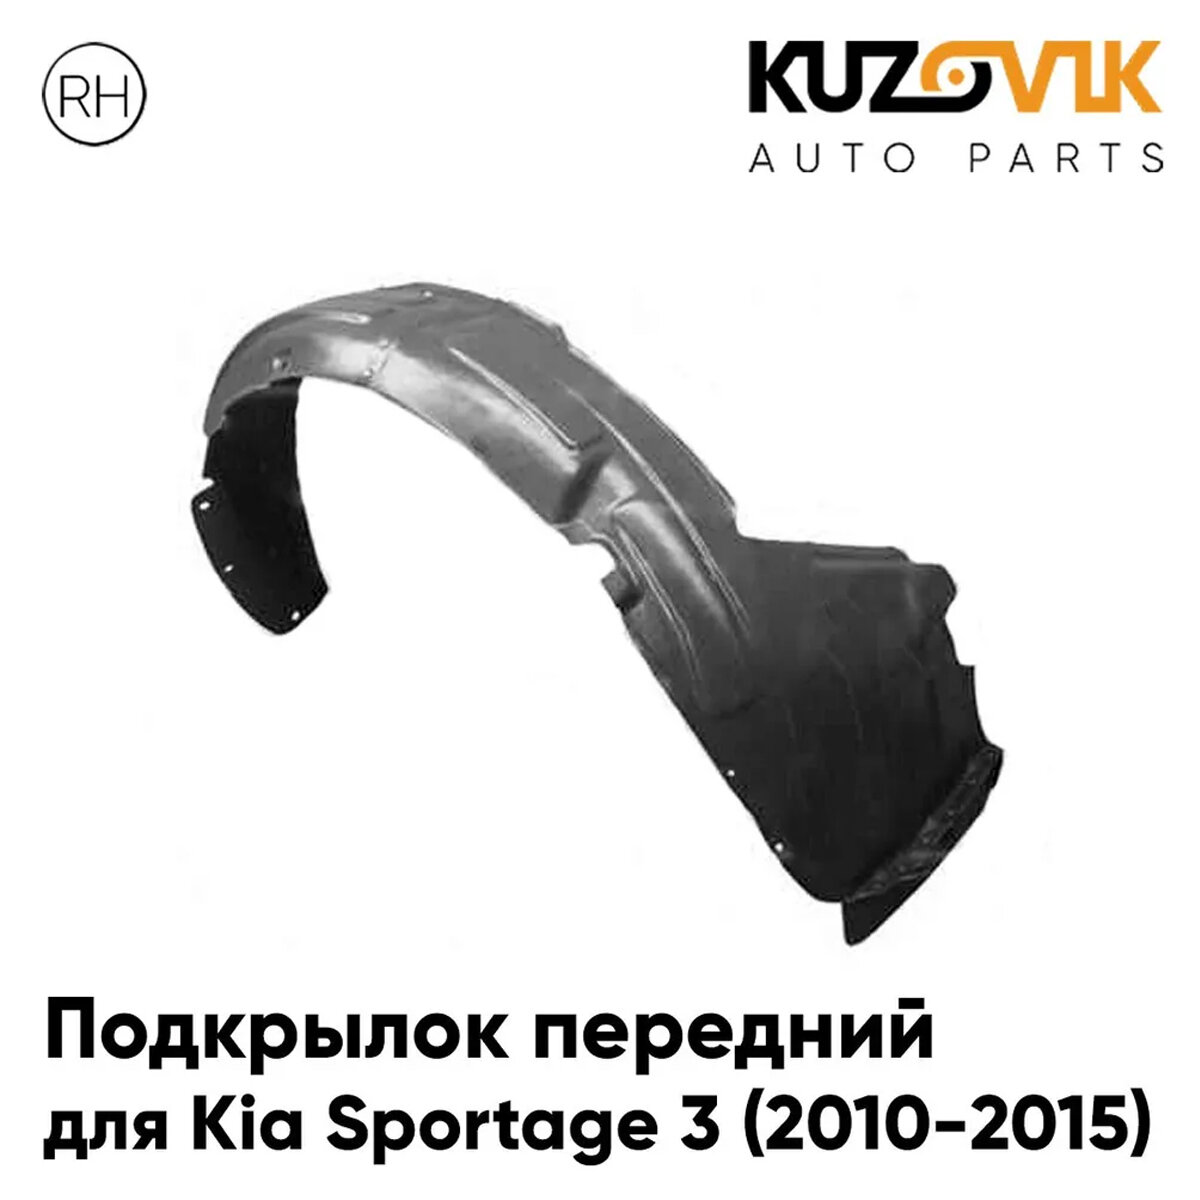 Подкрылок передний для Киа Спортейдж Kia Sportage 3 (2010-2015) правый